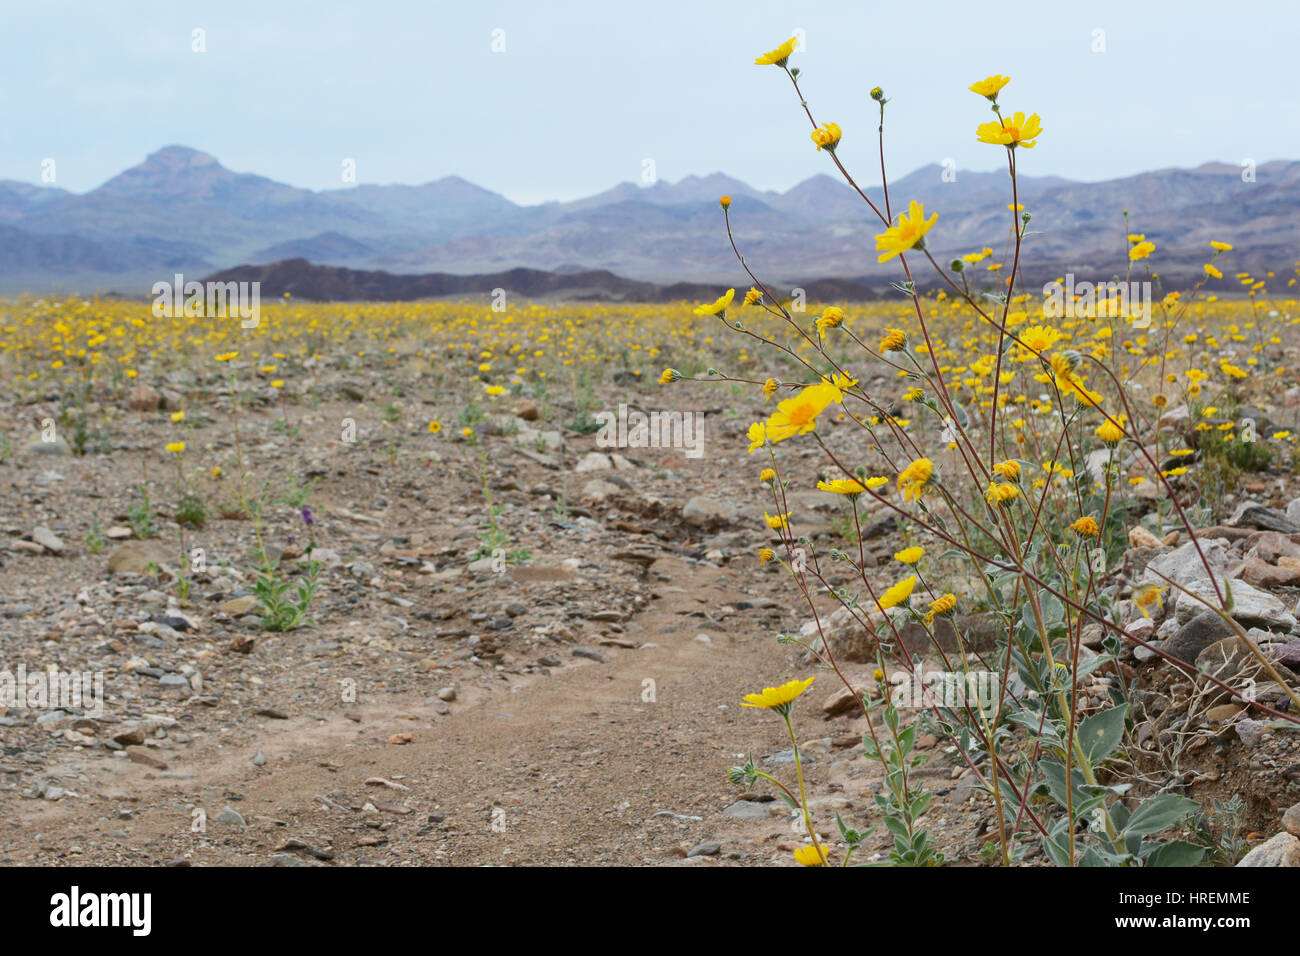 Une grappe de fleurs jaunes sur le côté droit du châssis, au-delà de ce que la vallée est couverte de fleurs sauvages menant à une chaîne de montagnes. Banque D'Images